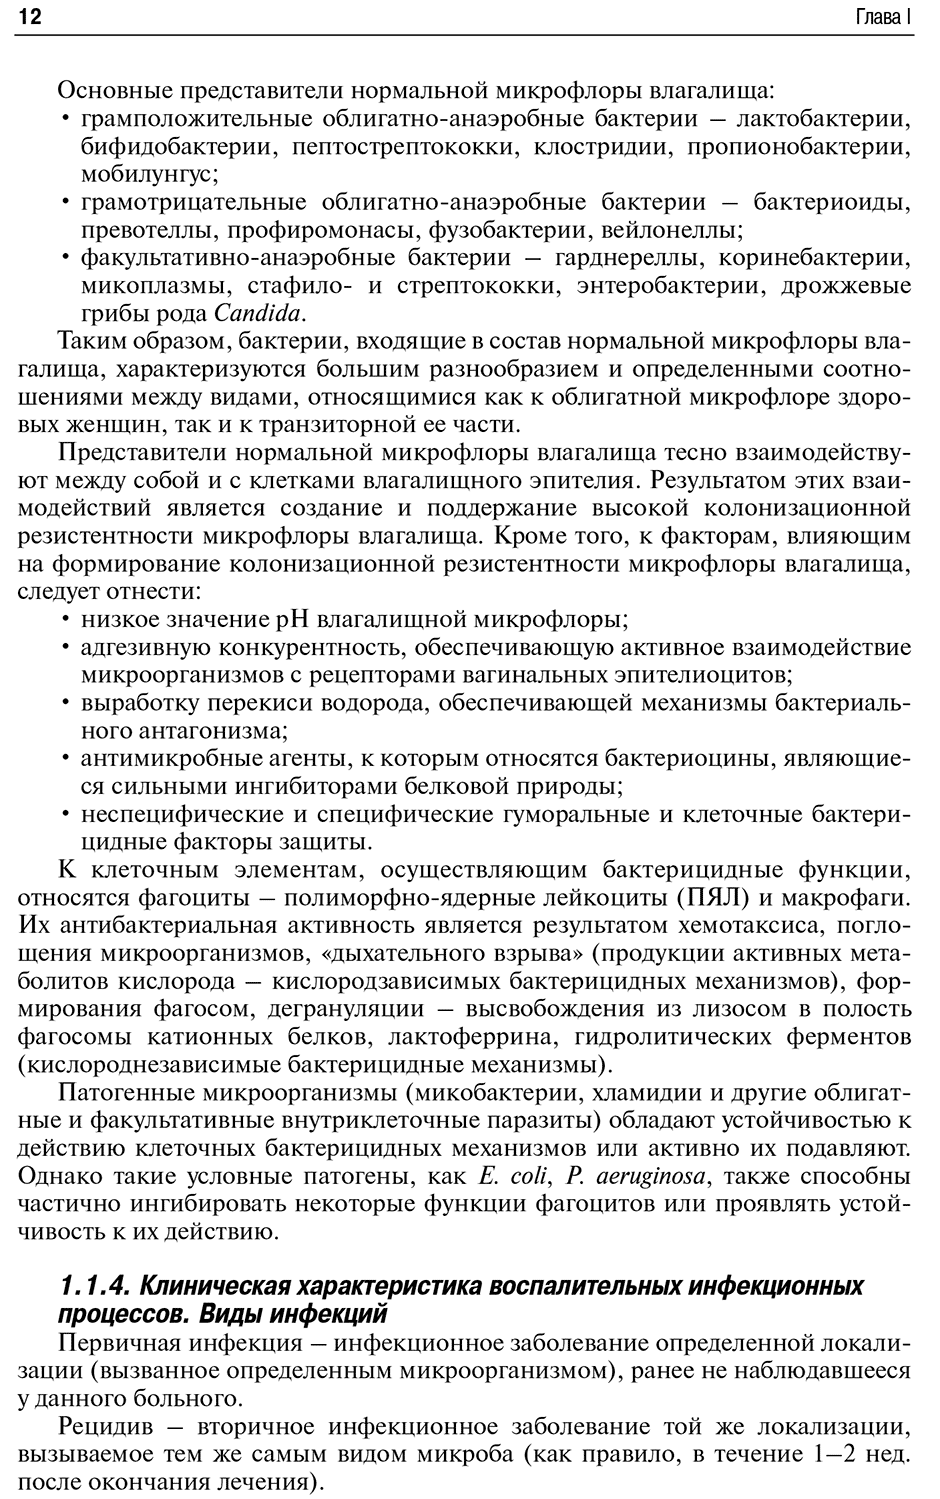 Пример страницы из книги "Инфекции в акушерстве и гинекологии" - Макаров О. В.